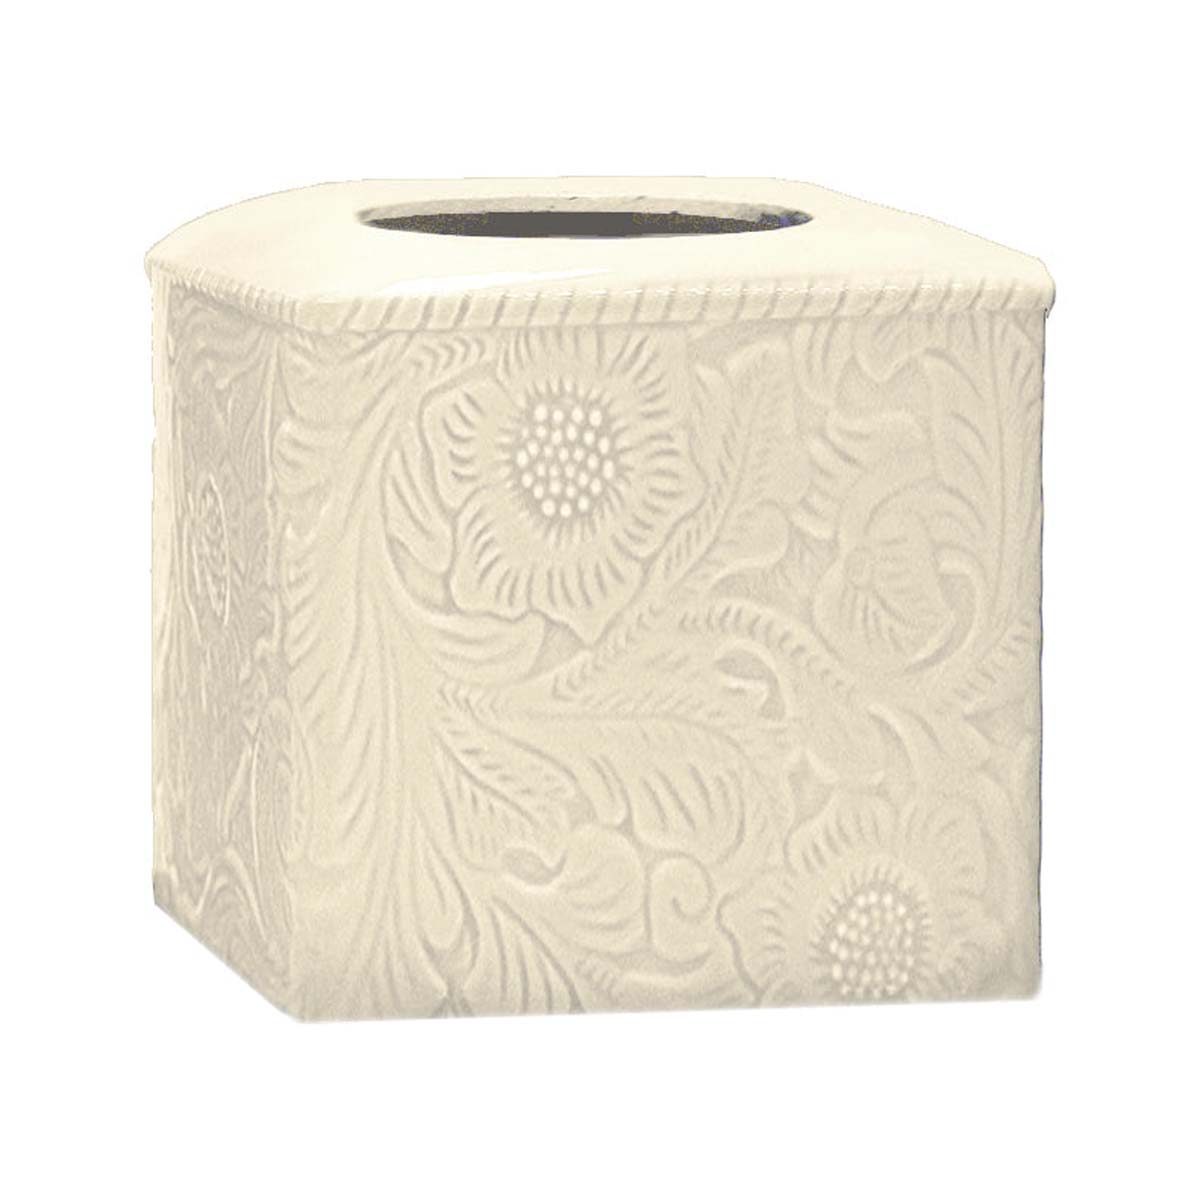 HiEnd Accents Savannah Tissue Box Cover Cream